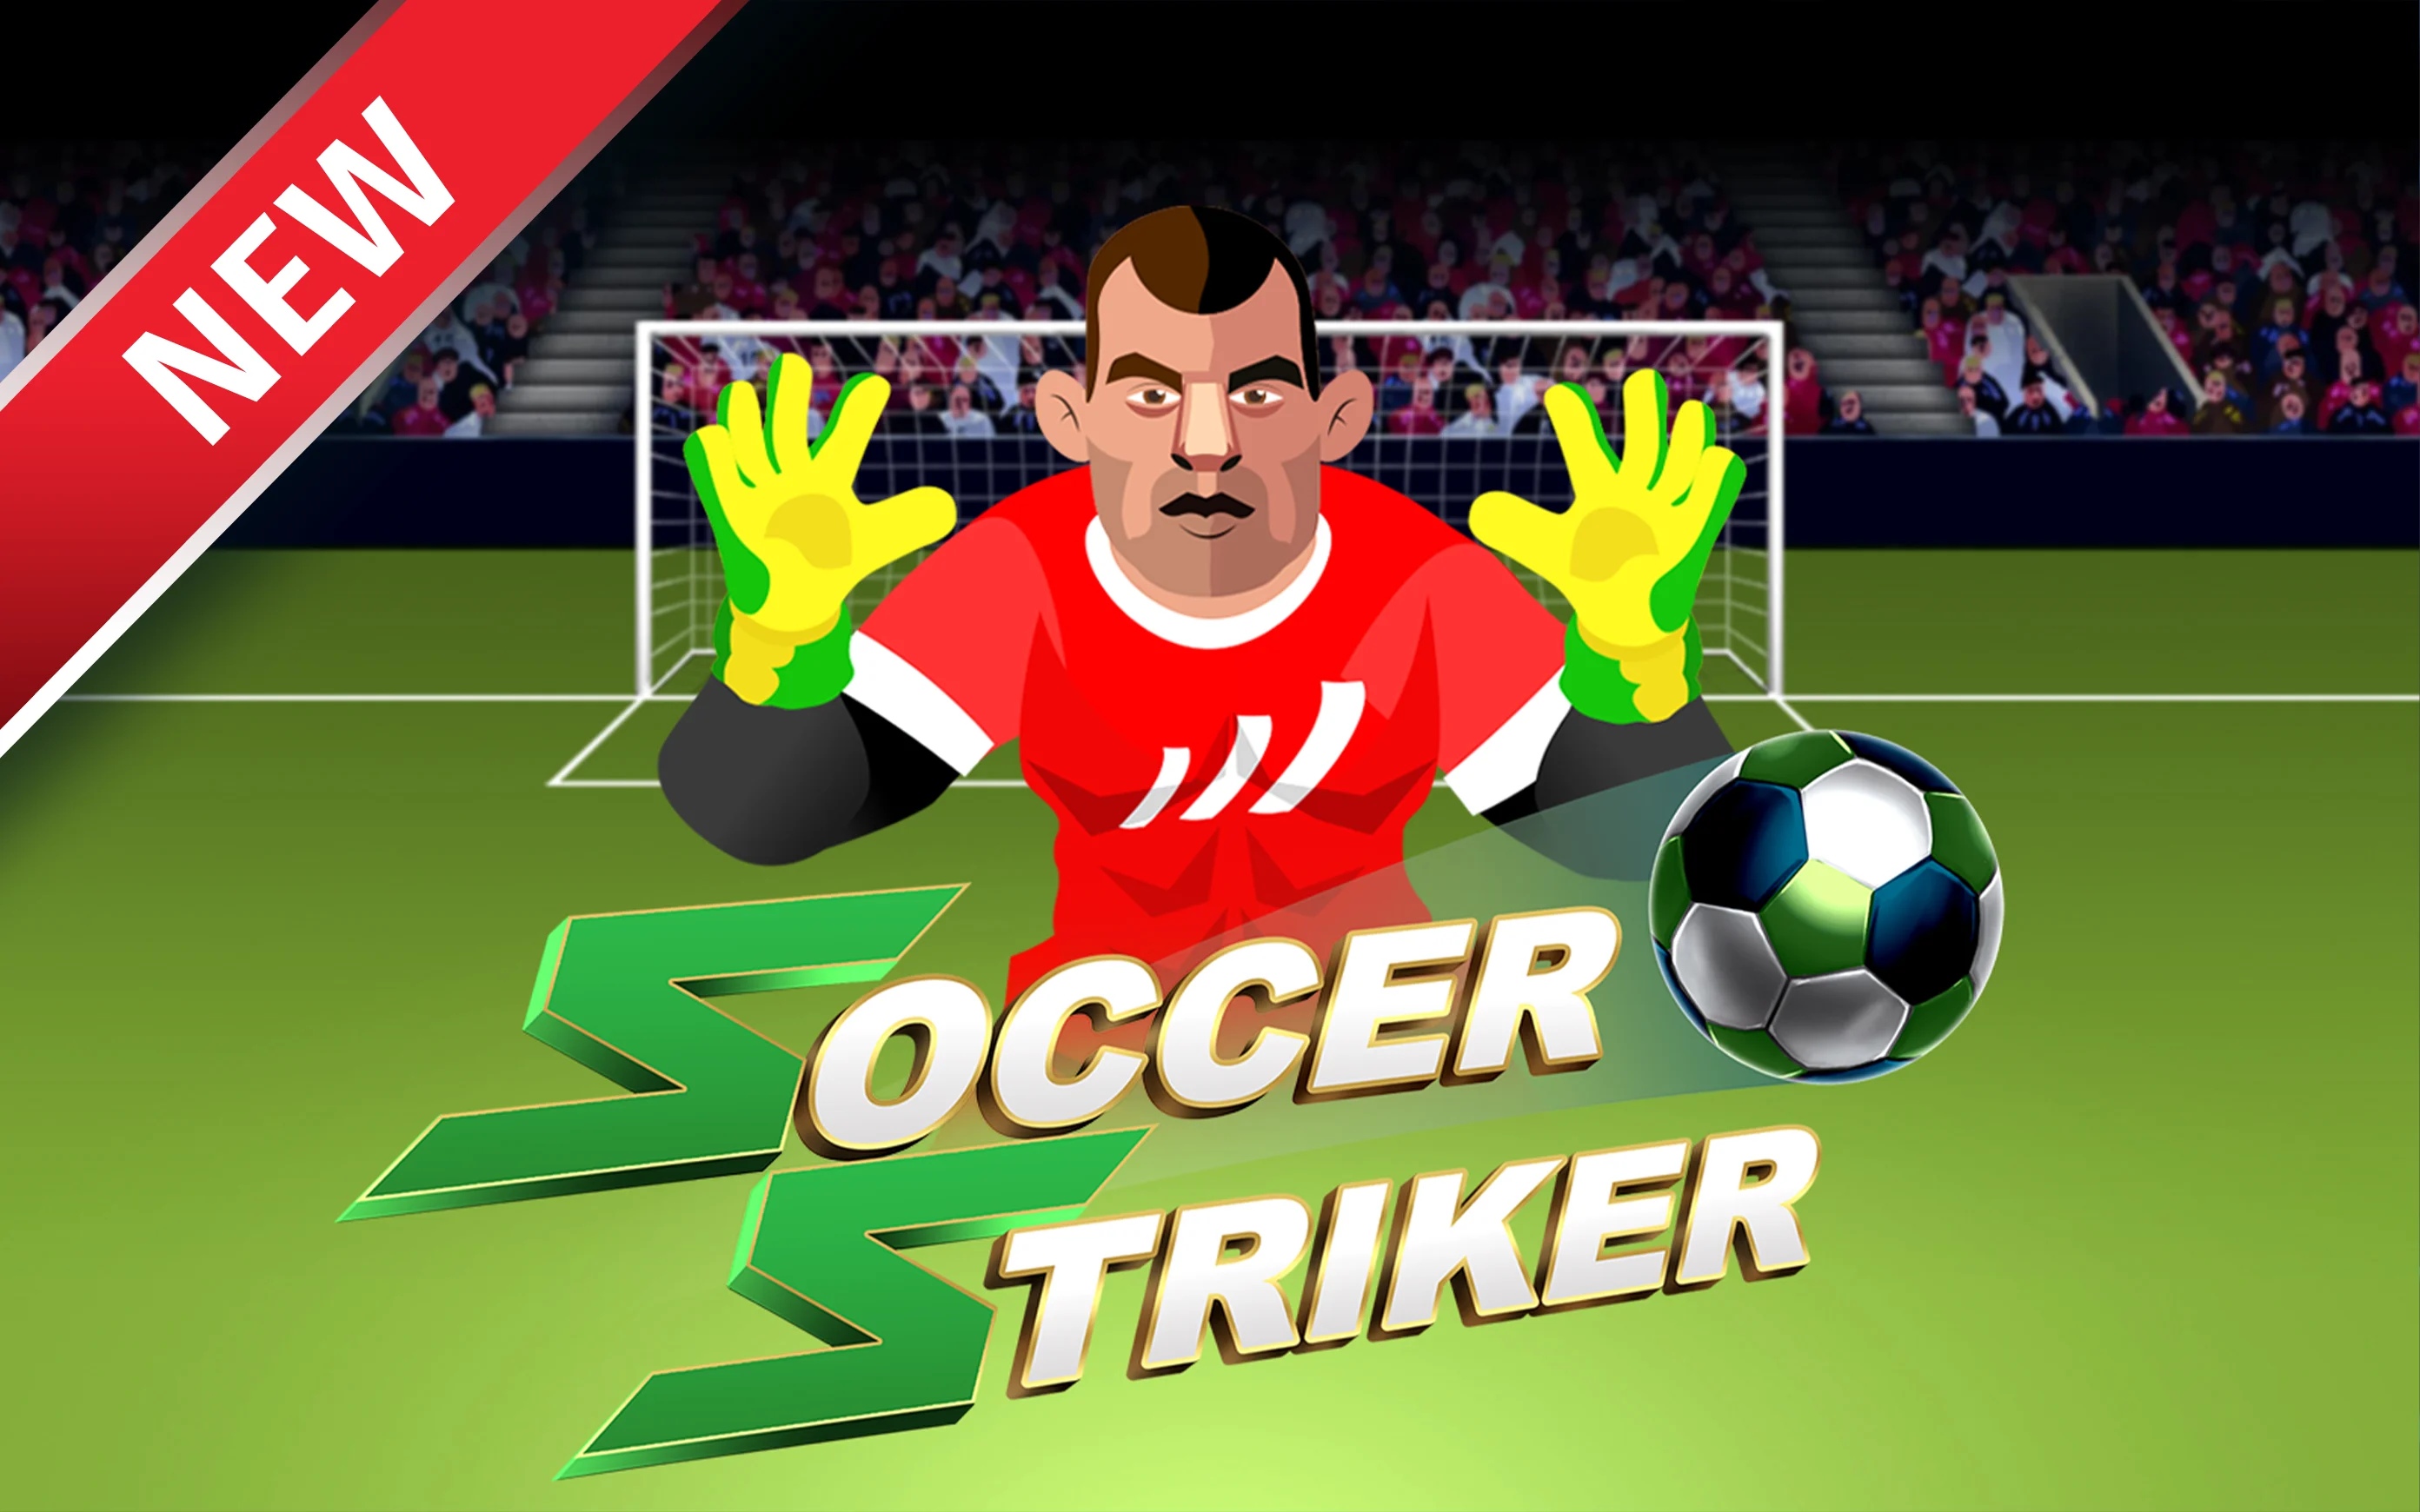 Spielen Sie Soccer Striker auf Starcasino.be-Online-Casino